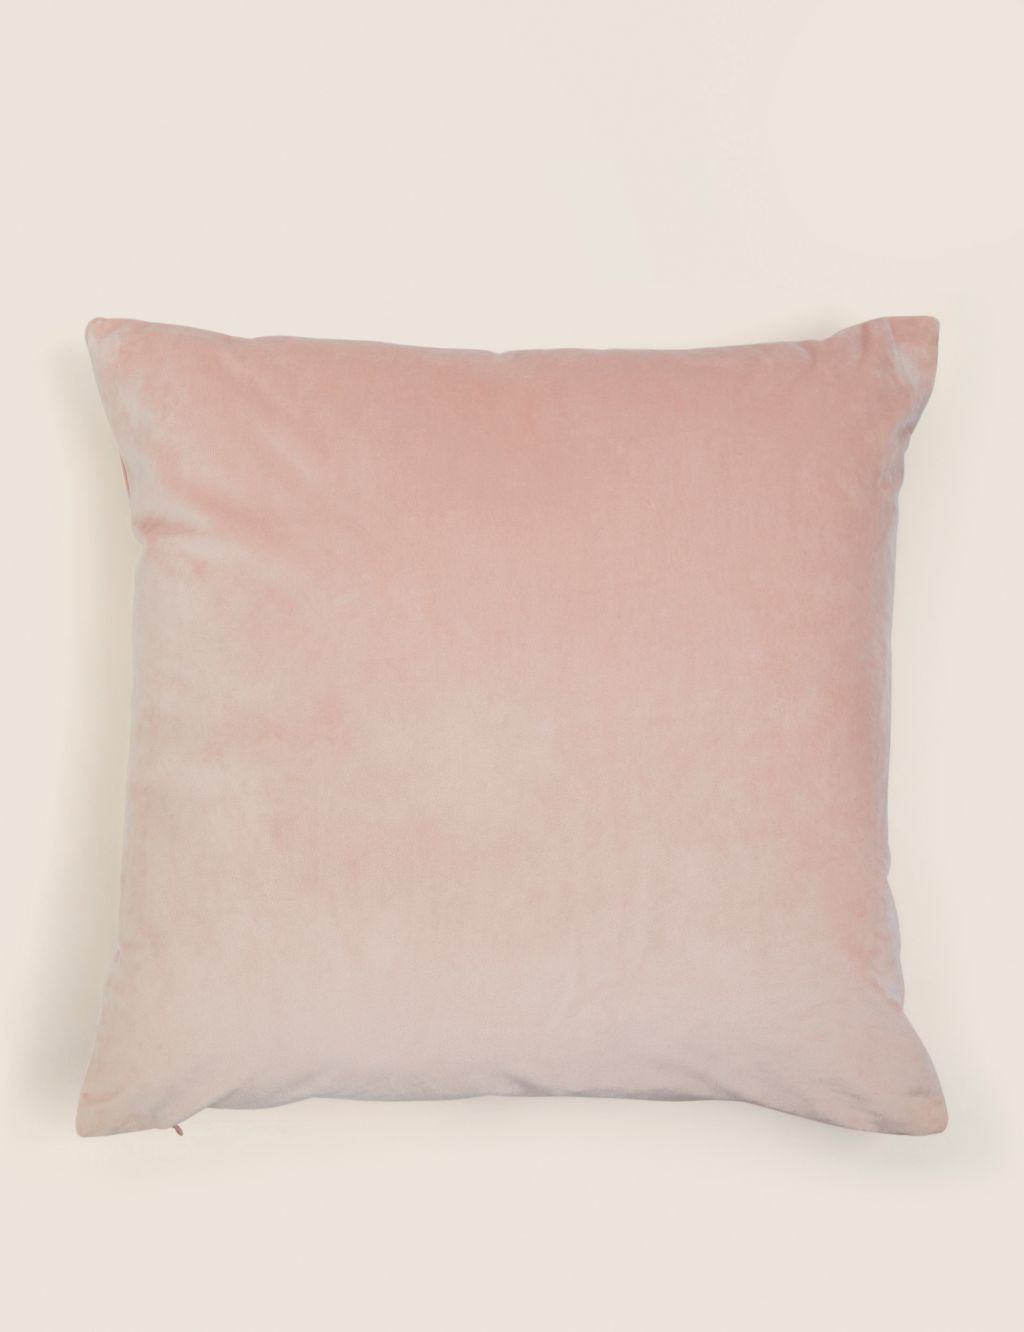 Velvet Cushion